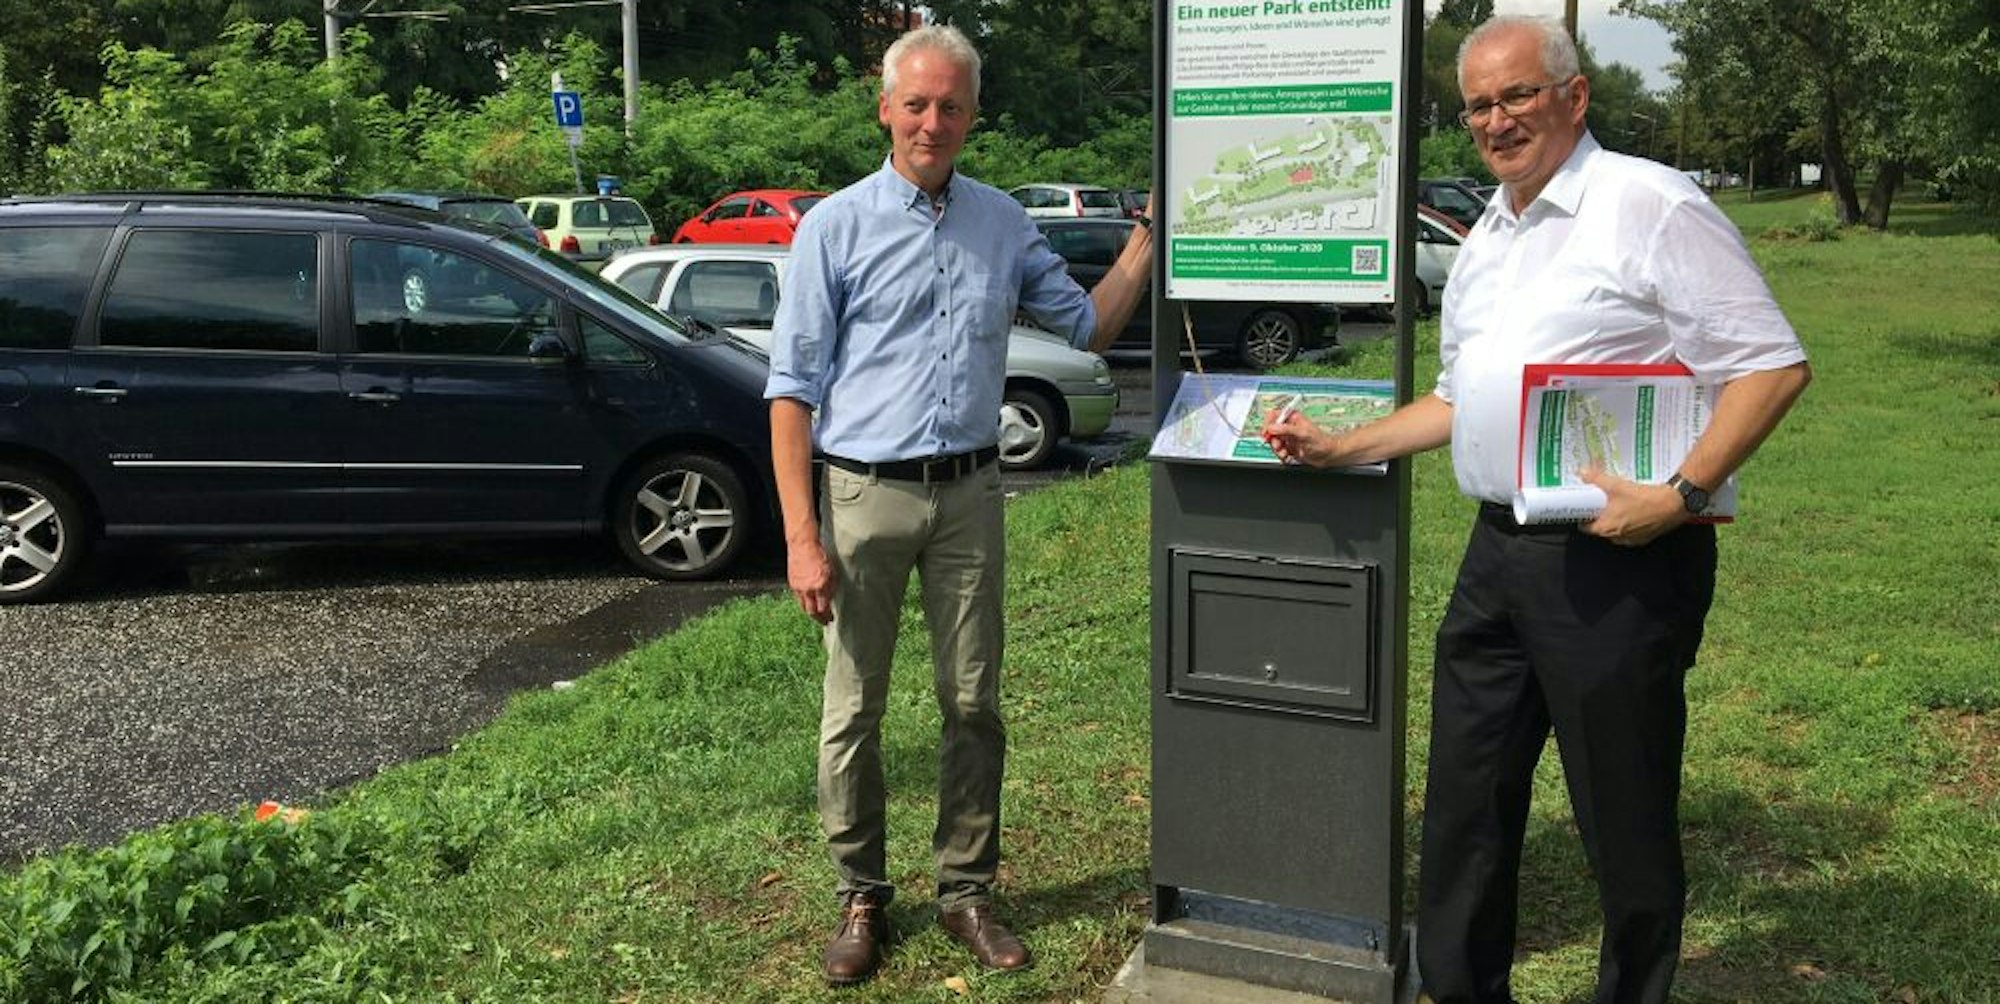 Joachim Bauer (l.) und Karl-​Heinz-​Merfeld am Wunsch-​Briefkasten für den künftigen Park. Ein zweieinhalb Hektar großes unattraktives Areal soll zu einem vielfältigen Erholungsort umgestaltet werden.